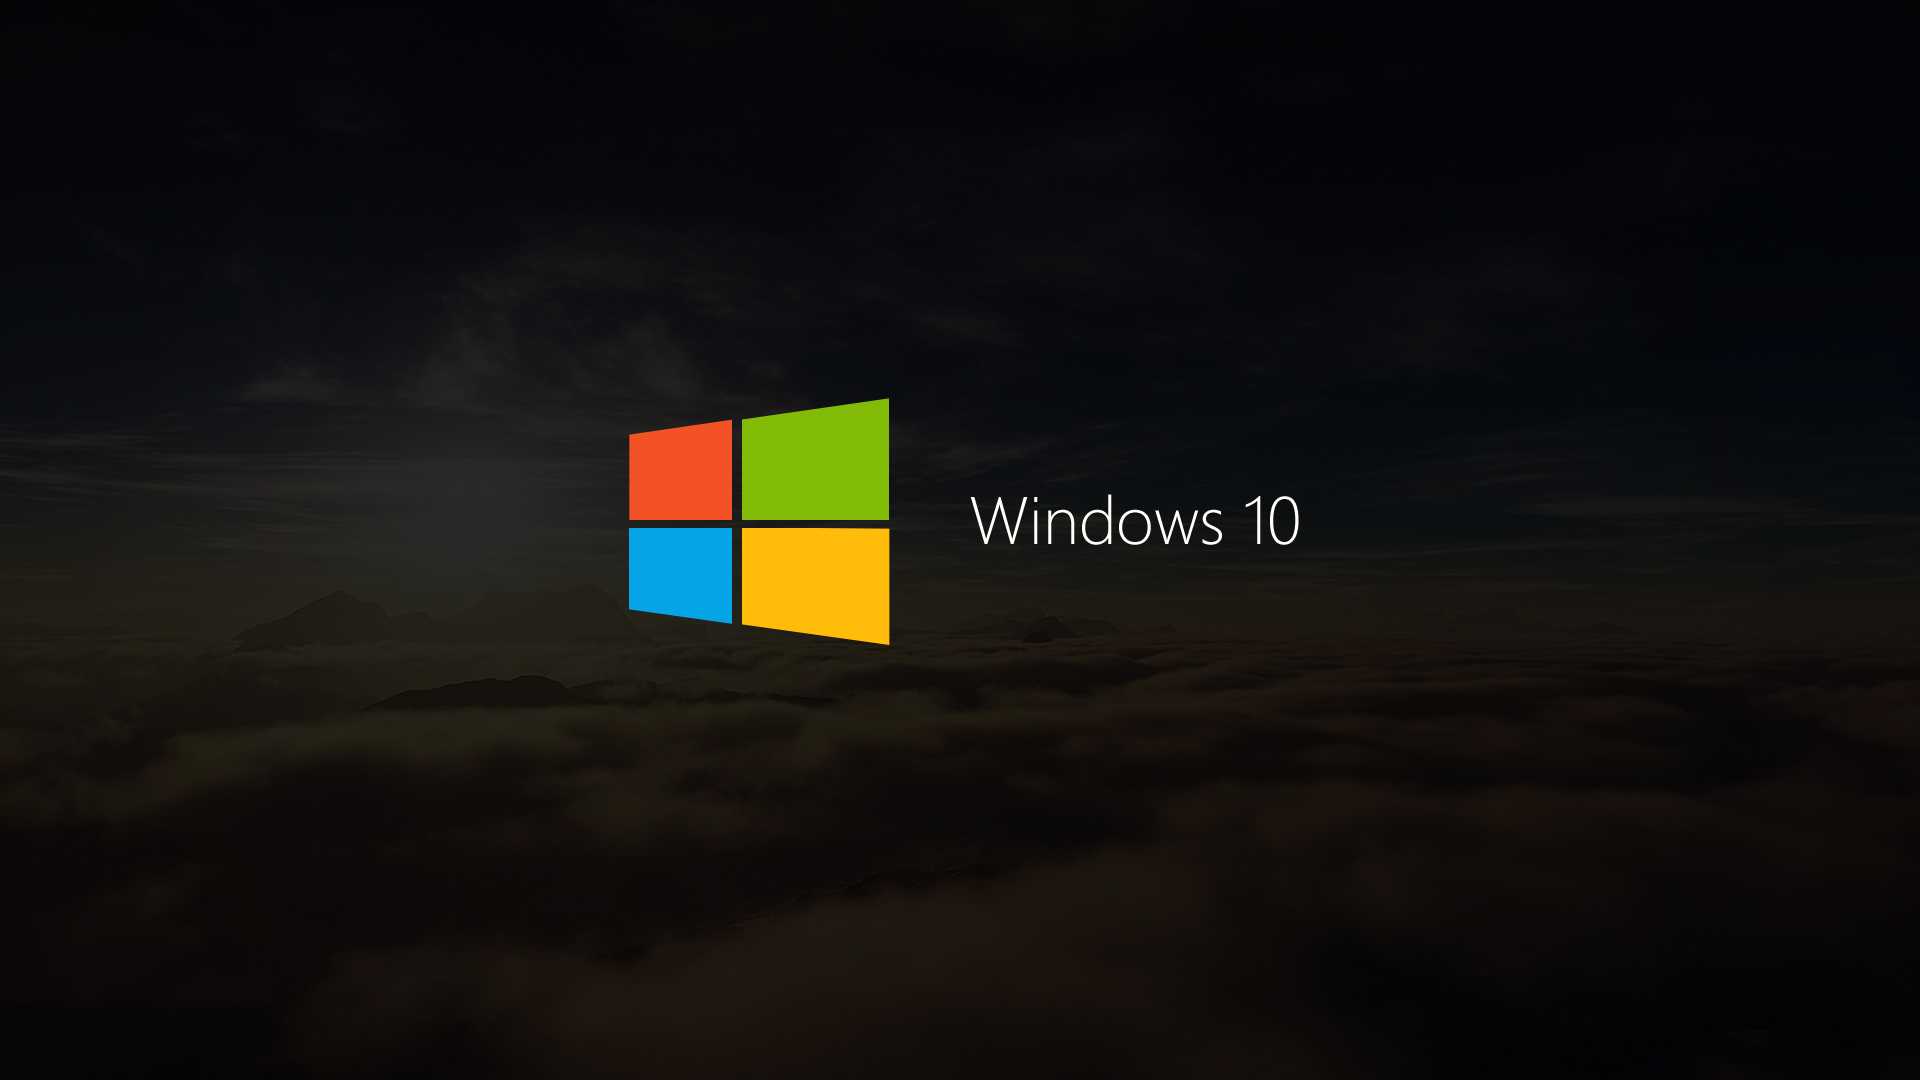 Фоны рабочего стола windows изменить. Виндовс 10. Обои Windows. Заставка Windows 10. Стандартный фон Windows 10.